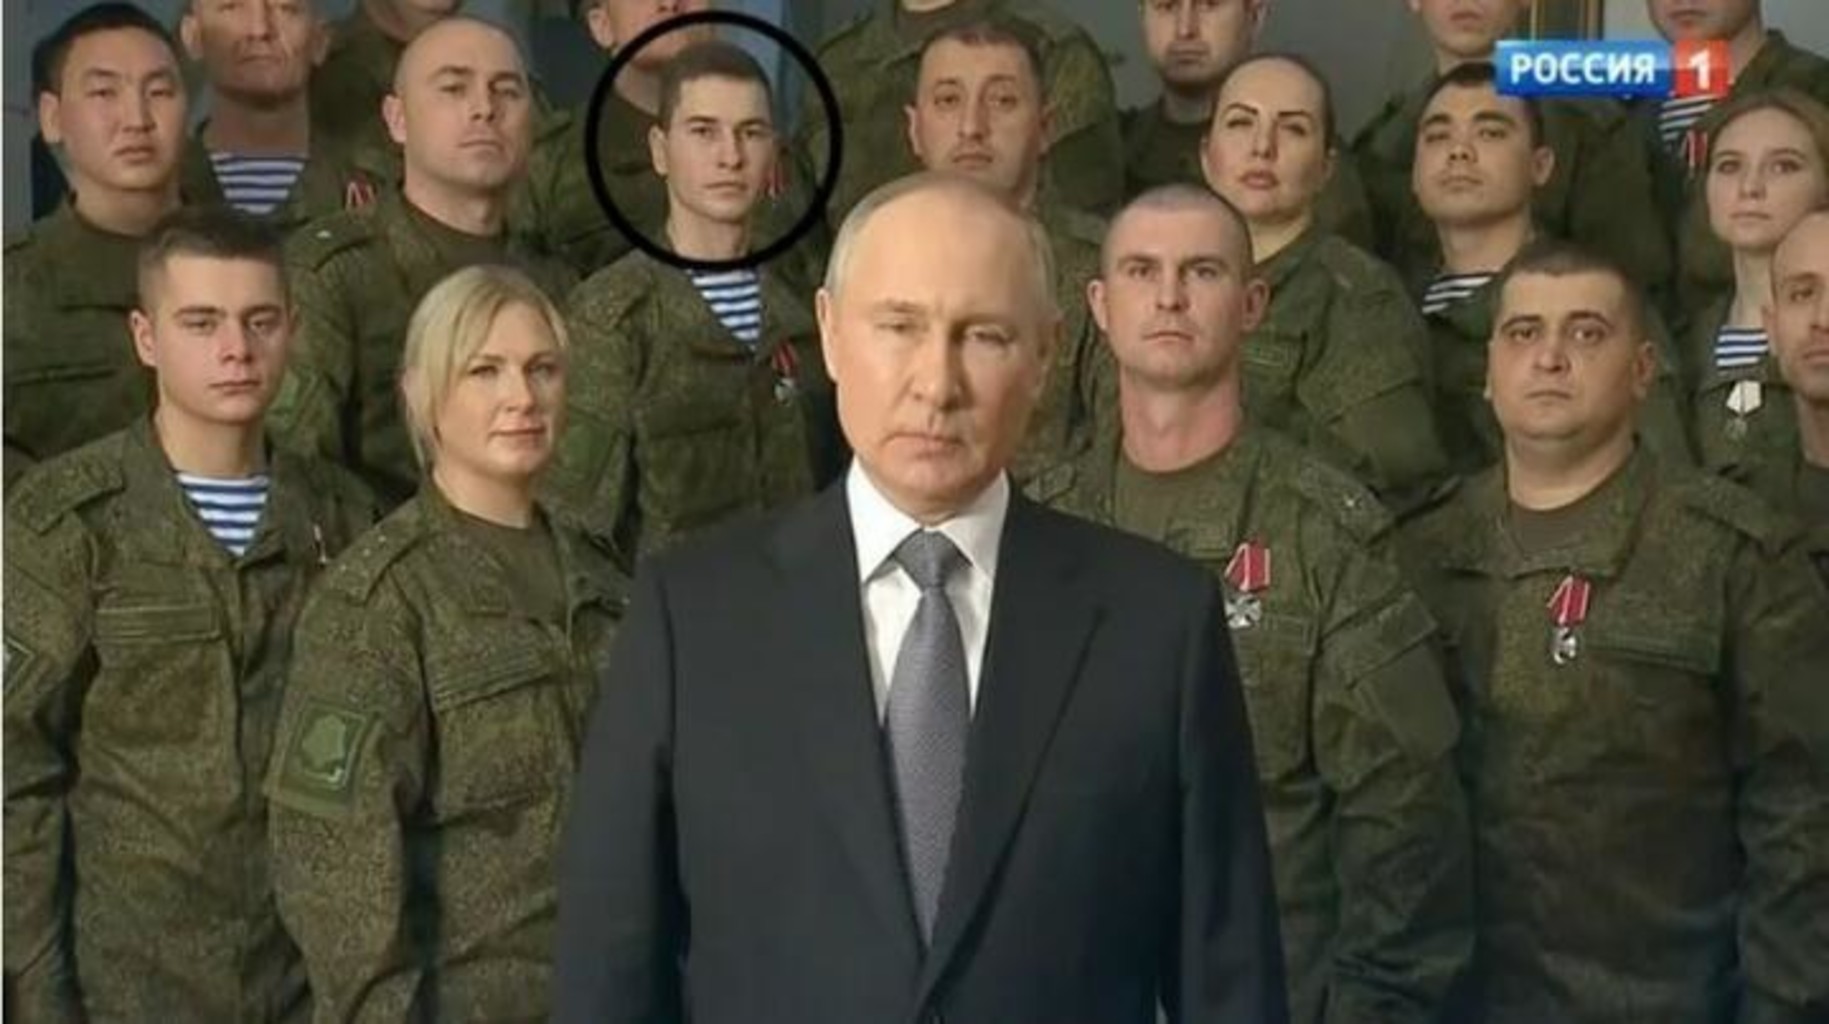 Putin novogodnee obrashchenie shnayder